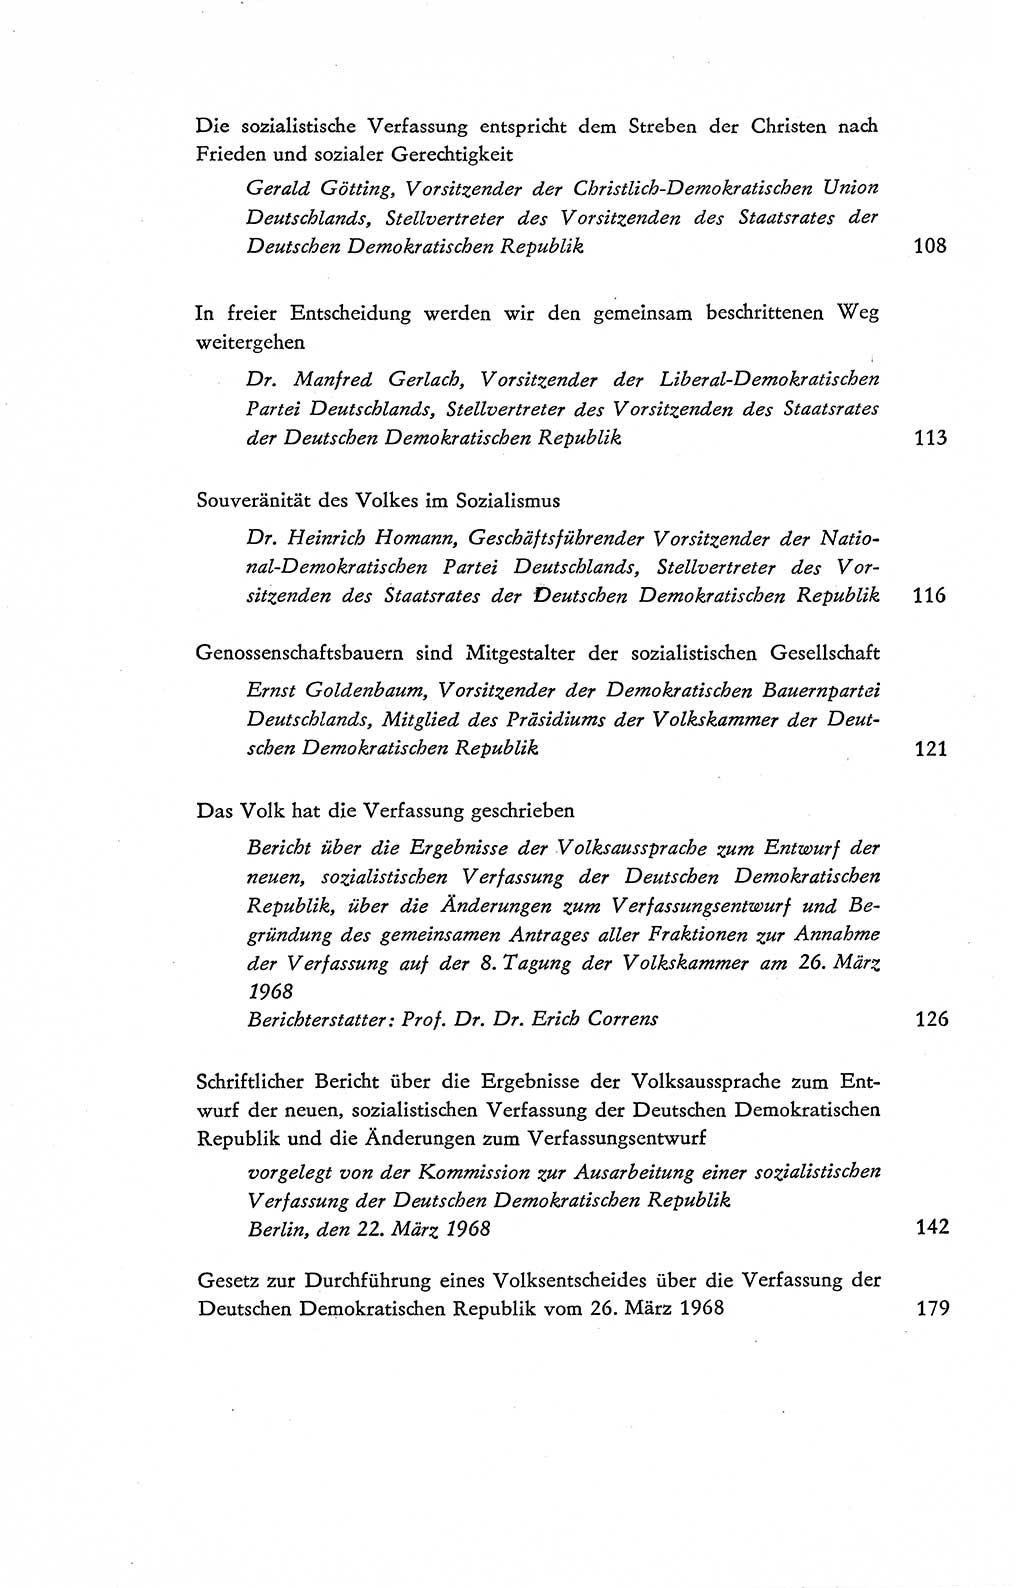 Verfassung der Deutschen Demokratischen Republik (DDR), Dokumente, Kommentar 1969, Band 2, Seite 553 (Verf. DDR Dok. Komm. 1969, Bd. 2, S. 553)